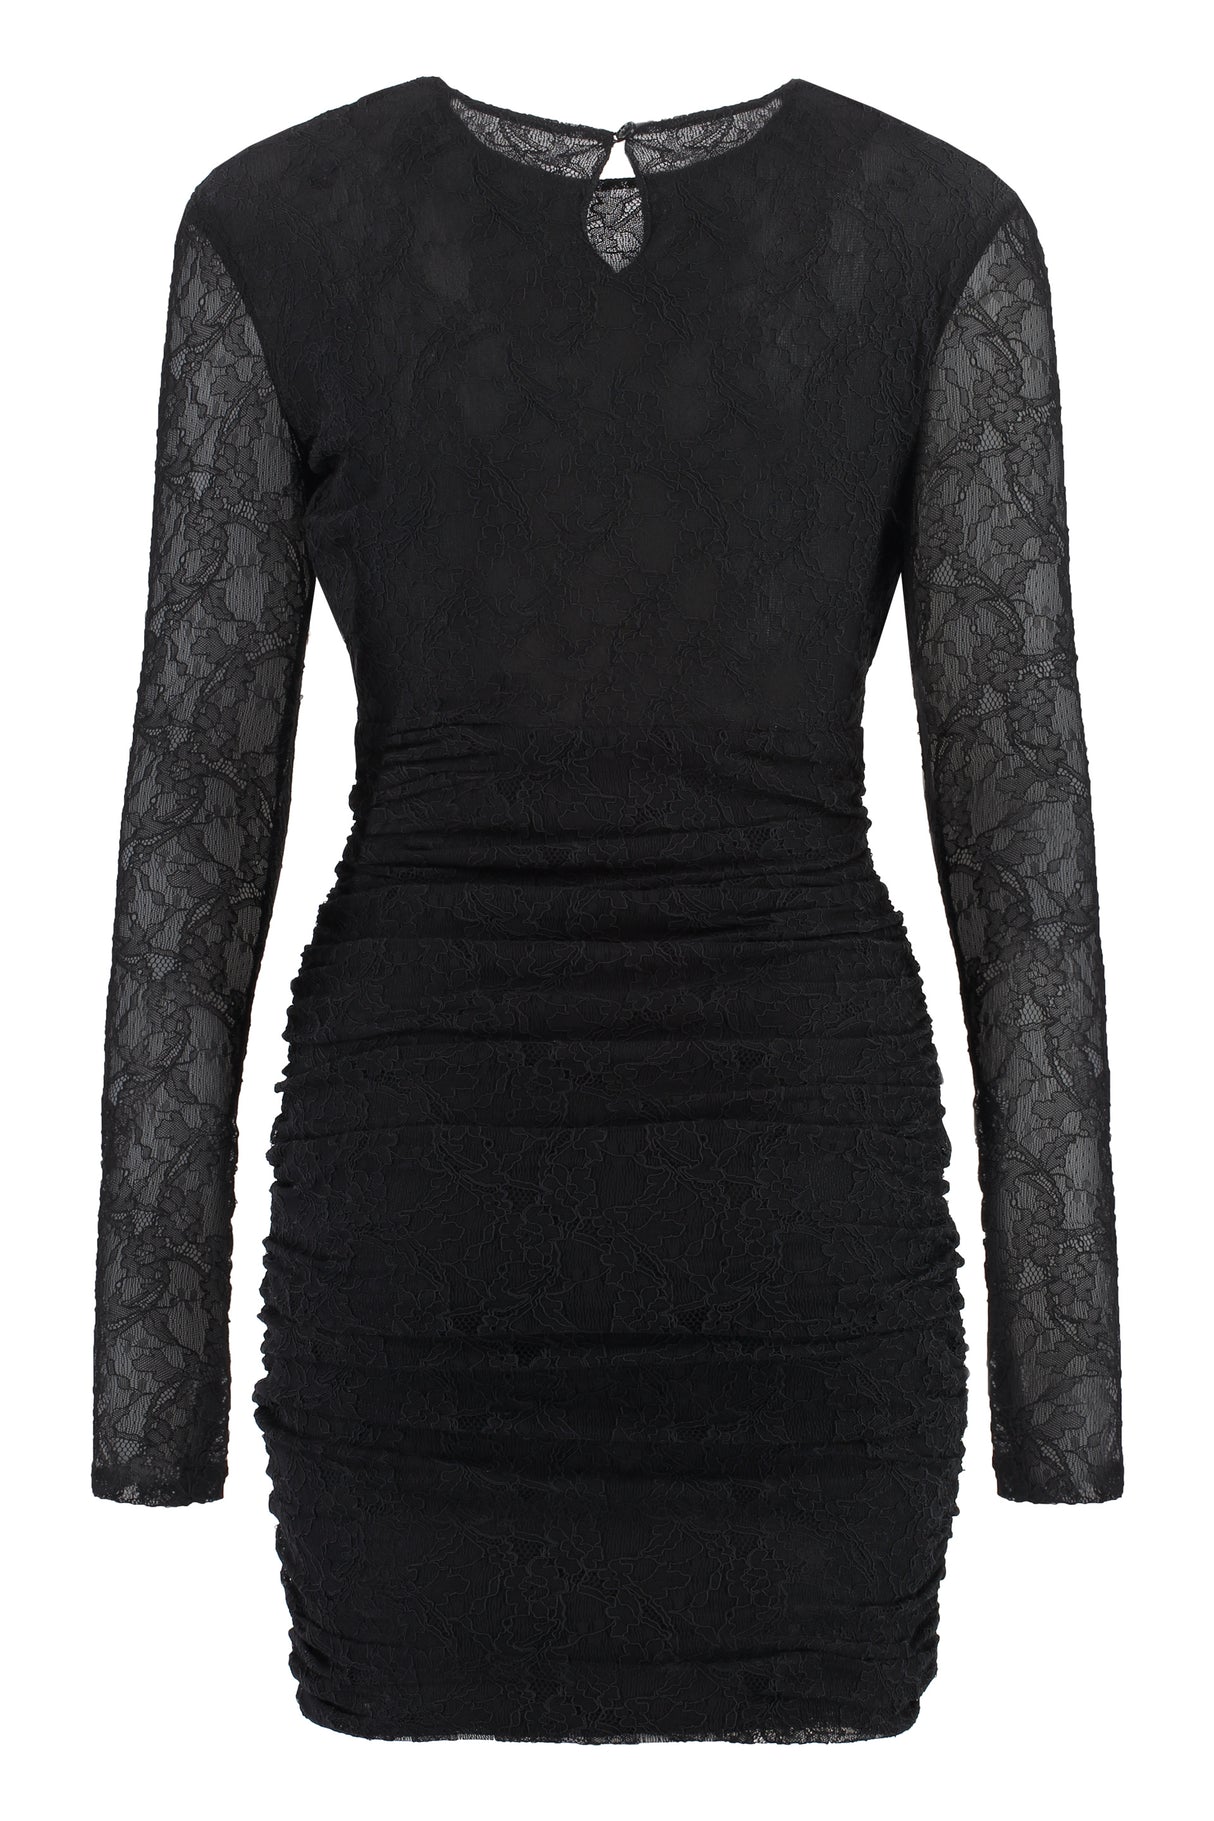 Đầm ren đen thời trang cho phụ nữ - Chi tiết cắt xẻ phía trước, khuy khóa phía sau